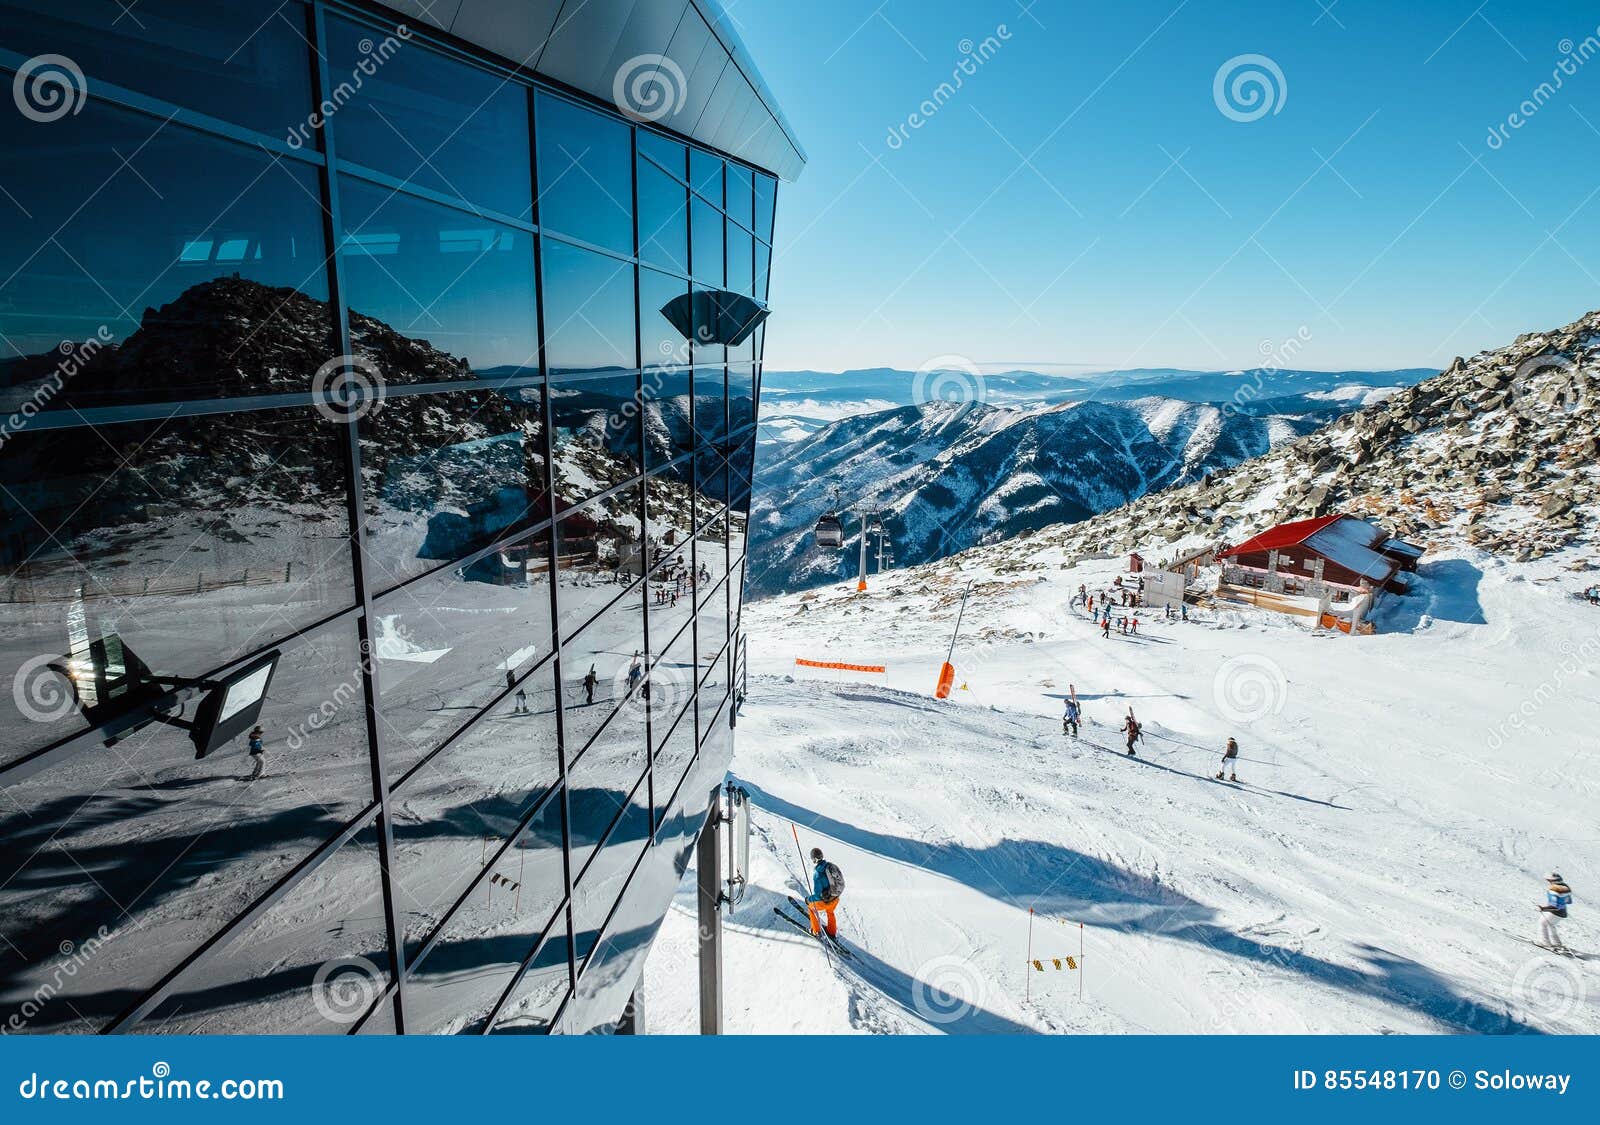 modern ski areal in tatra mountain